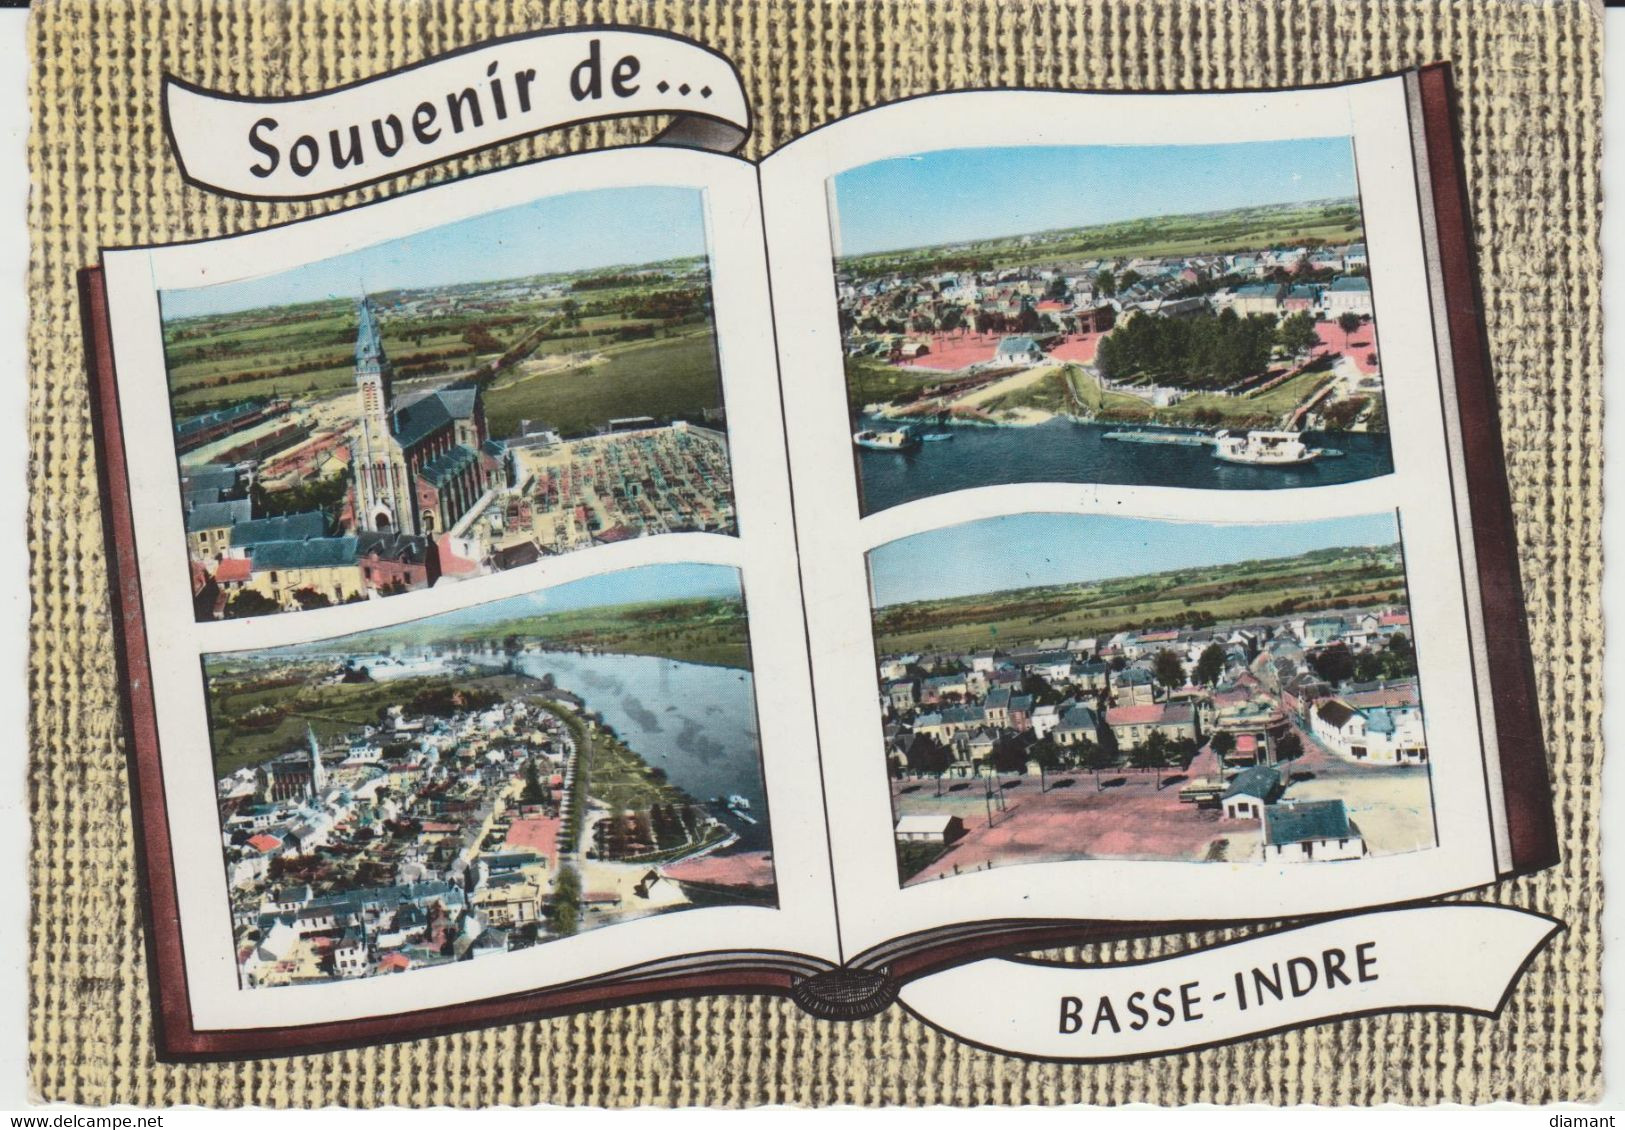 BASSE-INDRE (44) - Souvenir De - Bon état - Basse-Indre